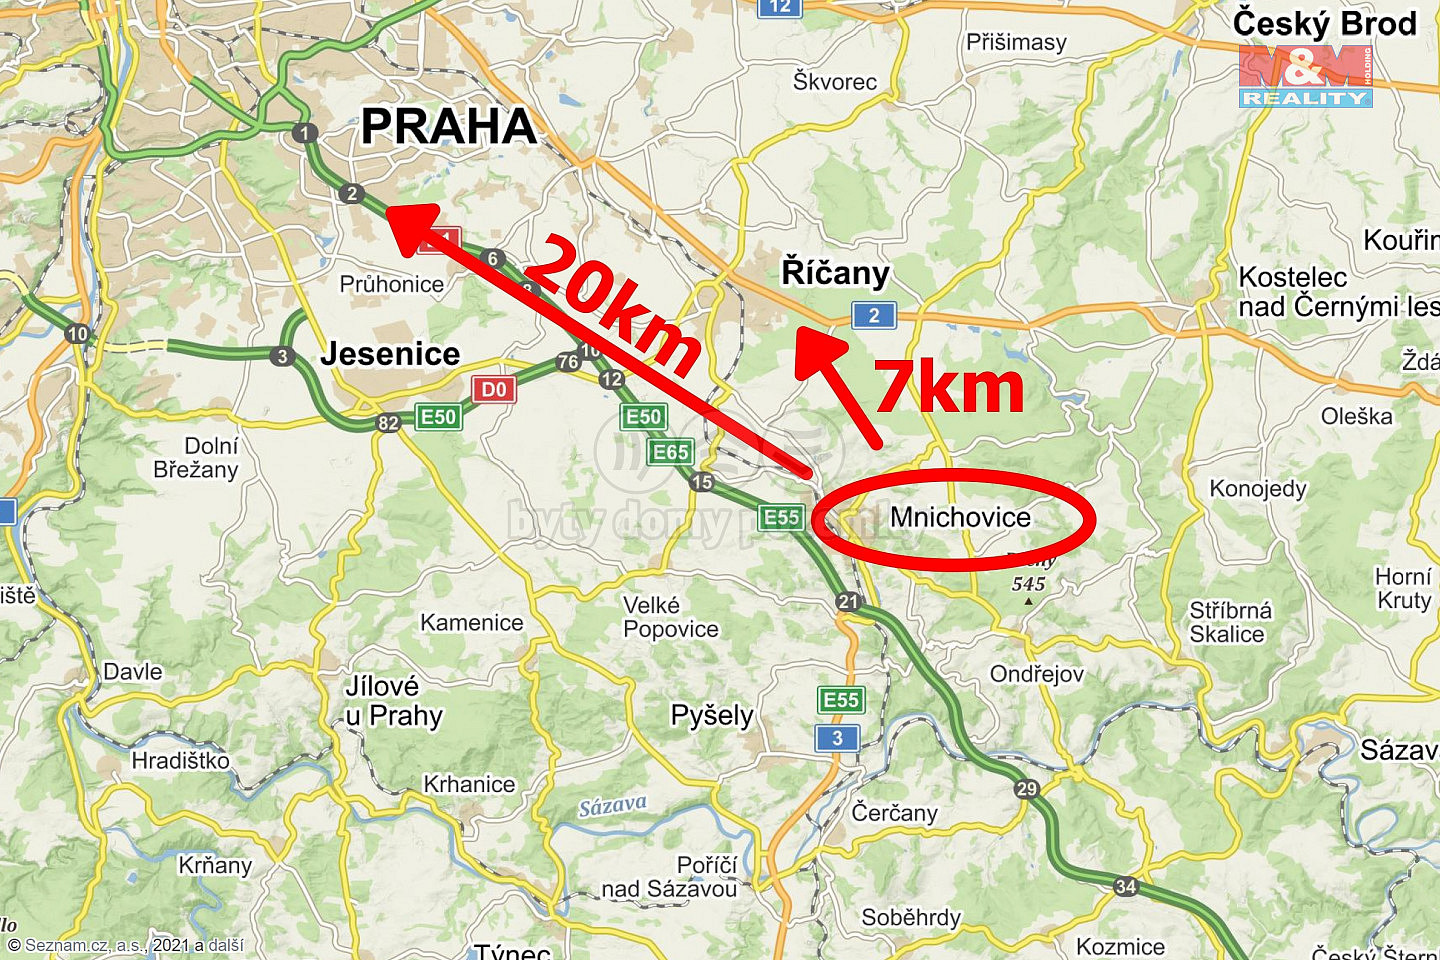 Mnichovice, okres Praha-východ